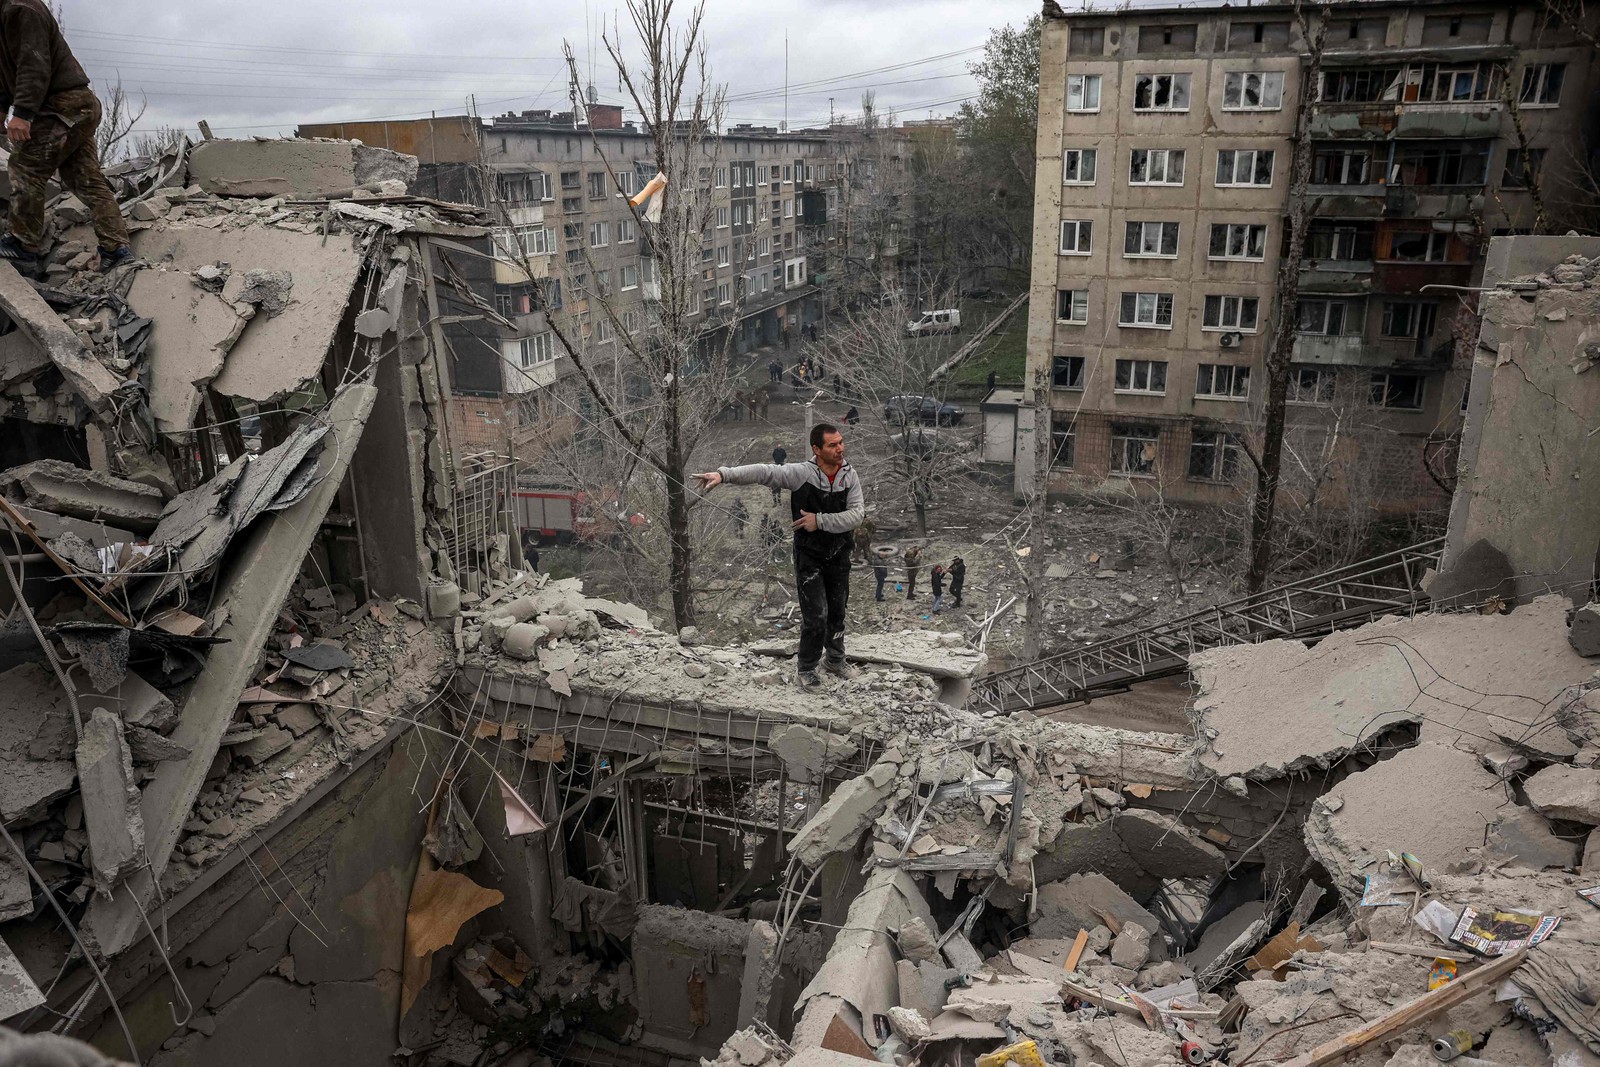 Autoridades haviam dito que cinco pessoas morreram, mas que possivelmente havia uma criança sob os escombros do prédio, um típico conjunto habitacional da era soviética — Foto: Anatolii Stepanov / AFP